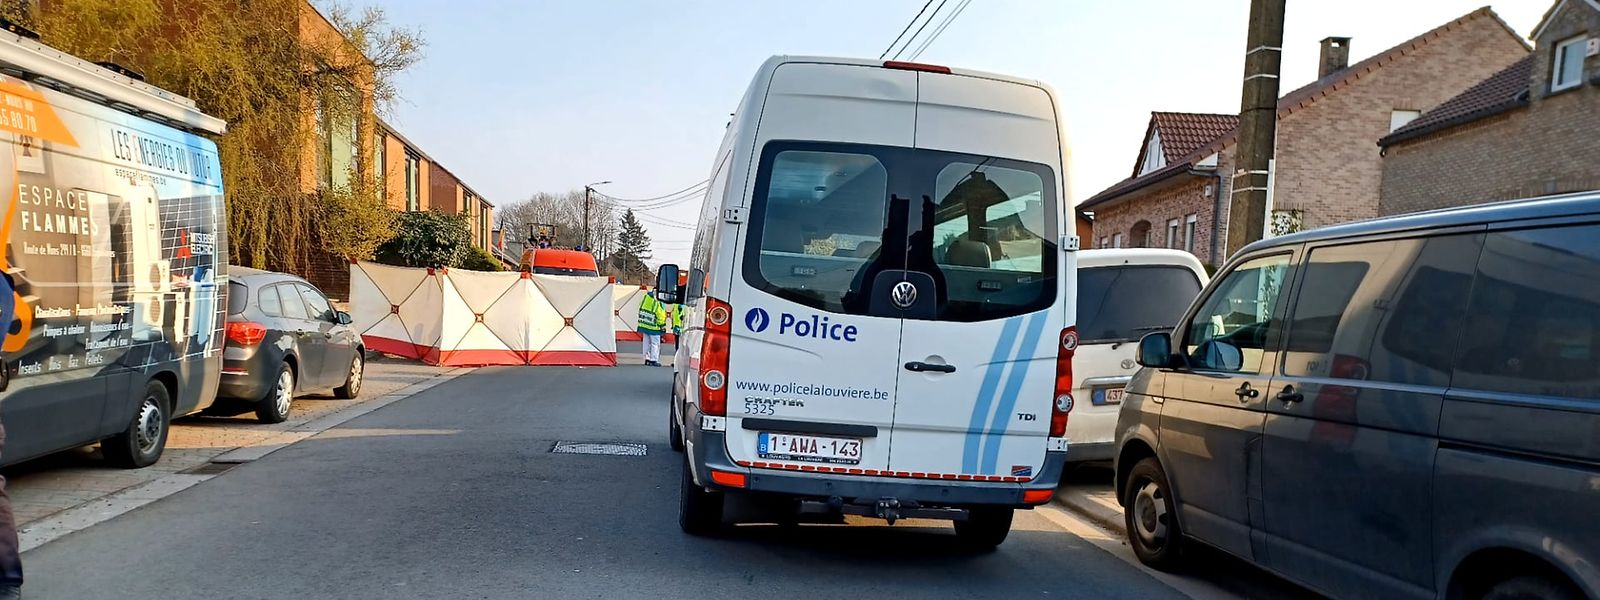 Ce matin, certains médias belges évoquent une course-poursuite engagée entre le véhicule impliqué et la police. Une information que dément le bourgmestre de La Louvière.